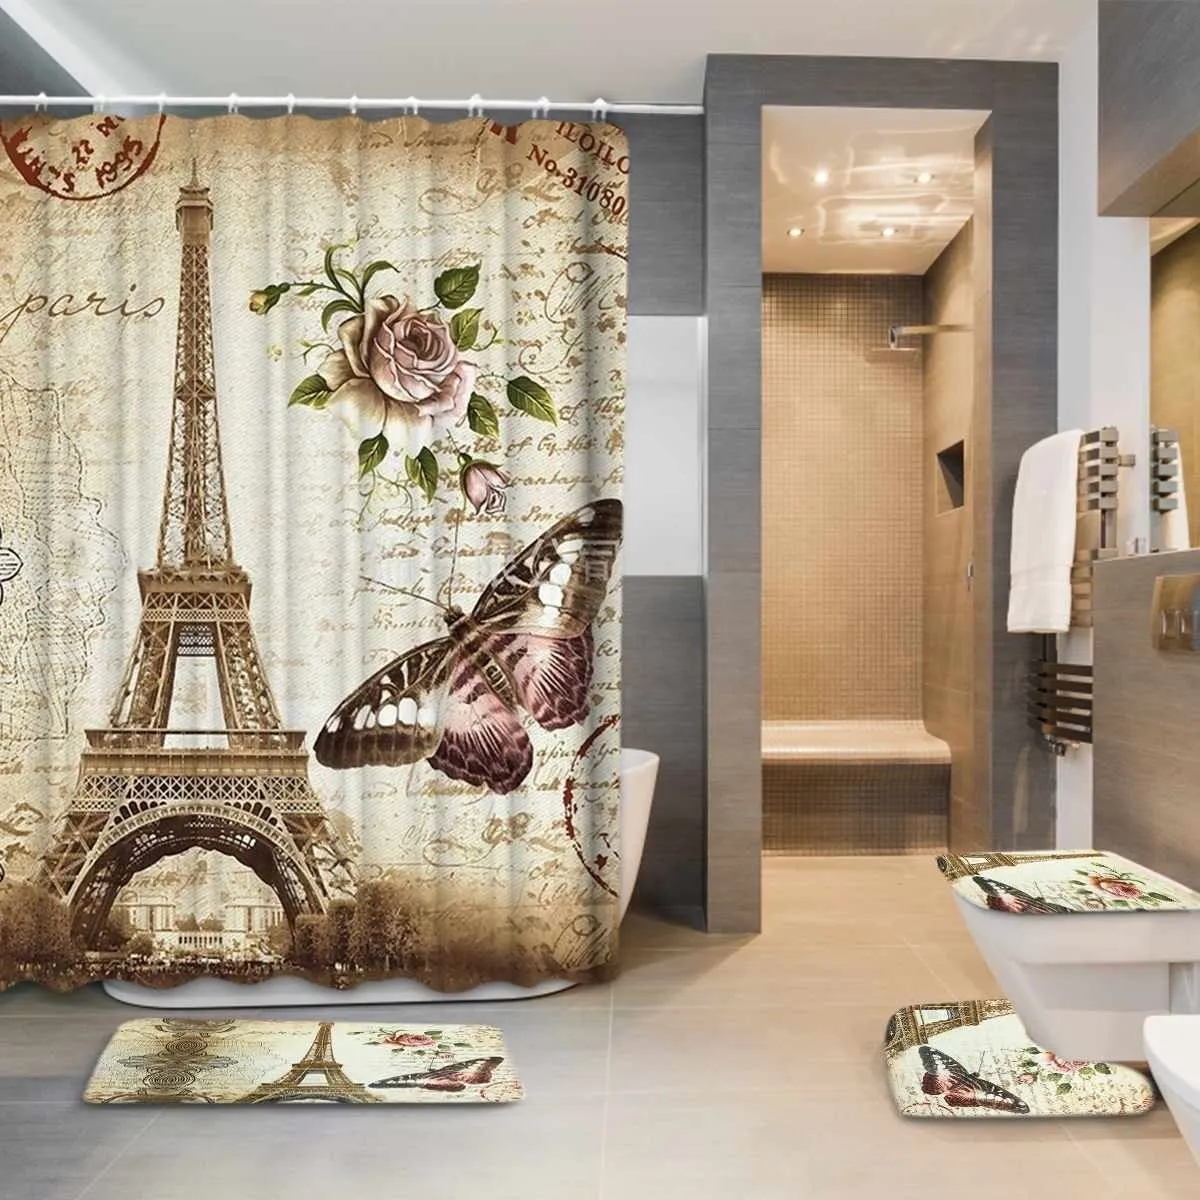 Torre Eiffel Paris Paisagem Impressão de Banheiro Curtain Curtain Set à prova d 'água anti-deslizamento pedestal tampa tampa tampa de banho esteira conjunto y200108